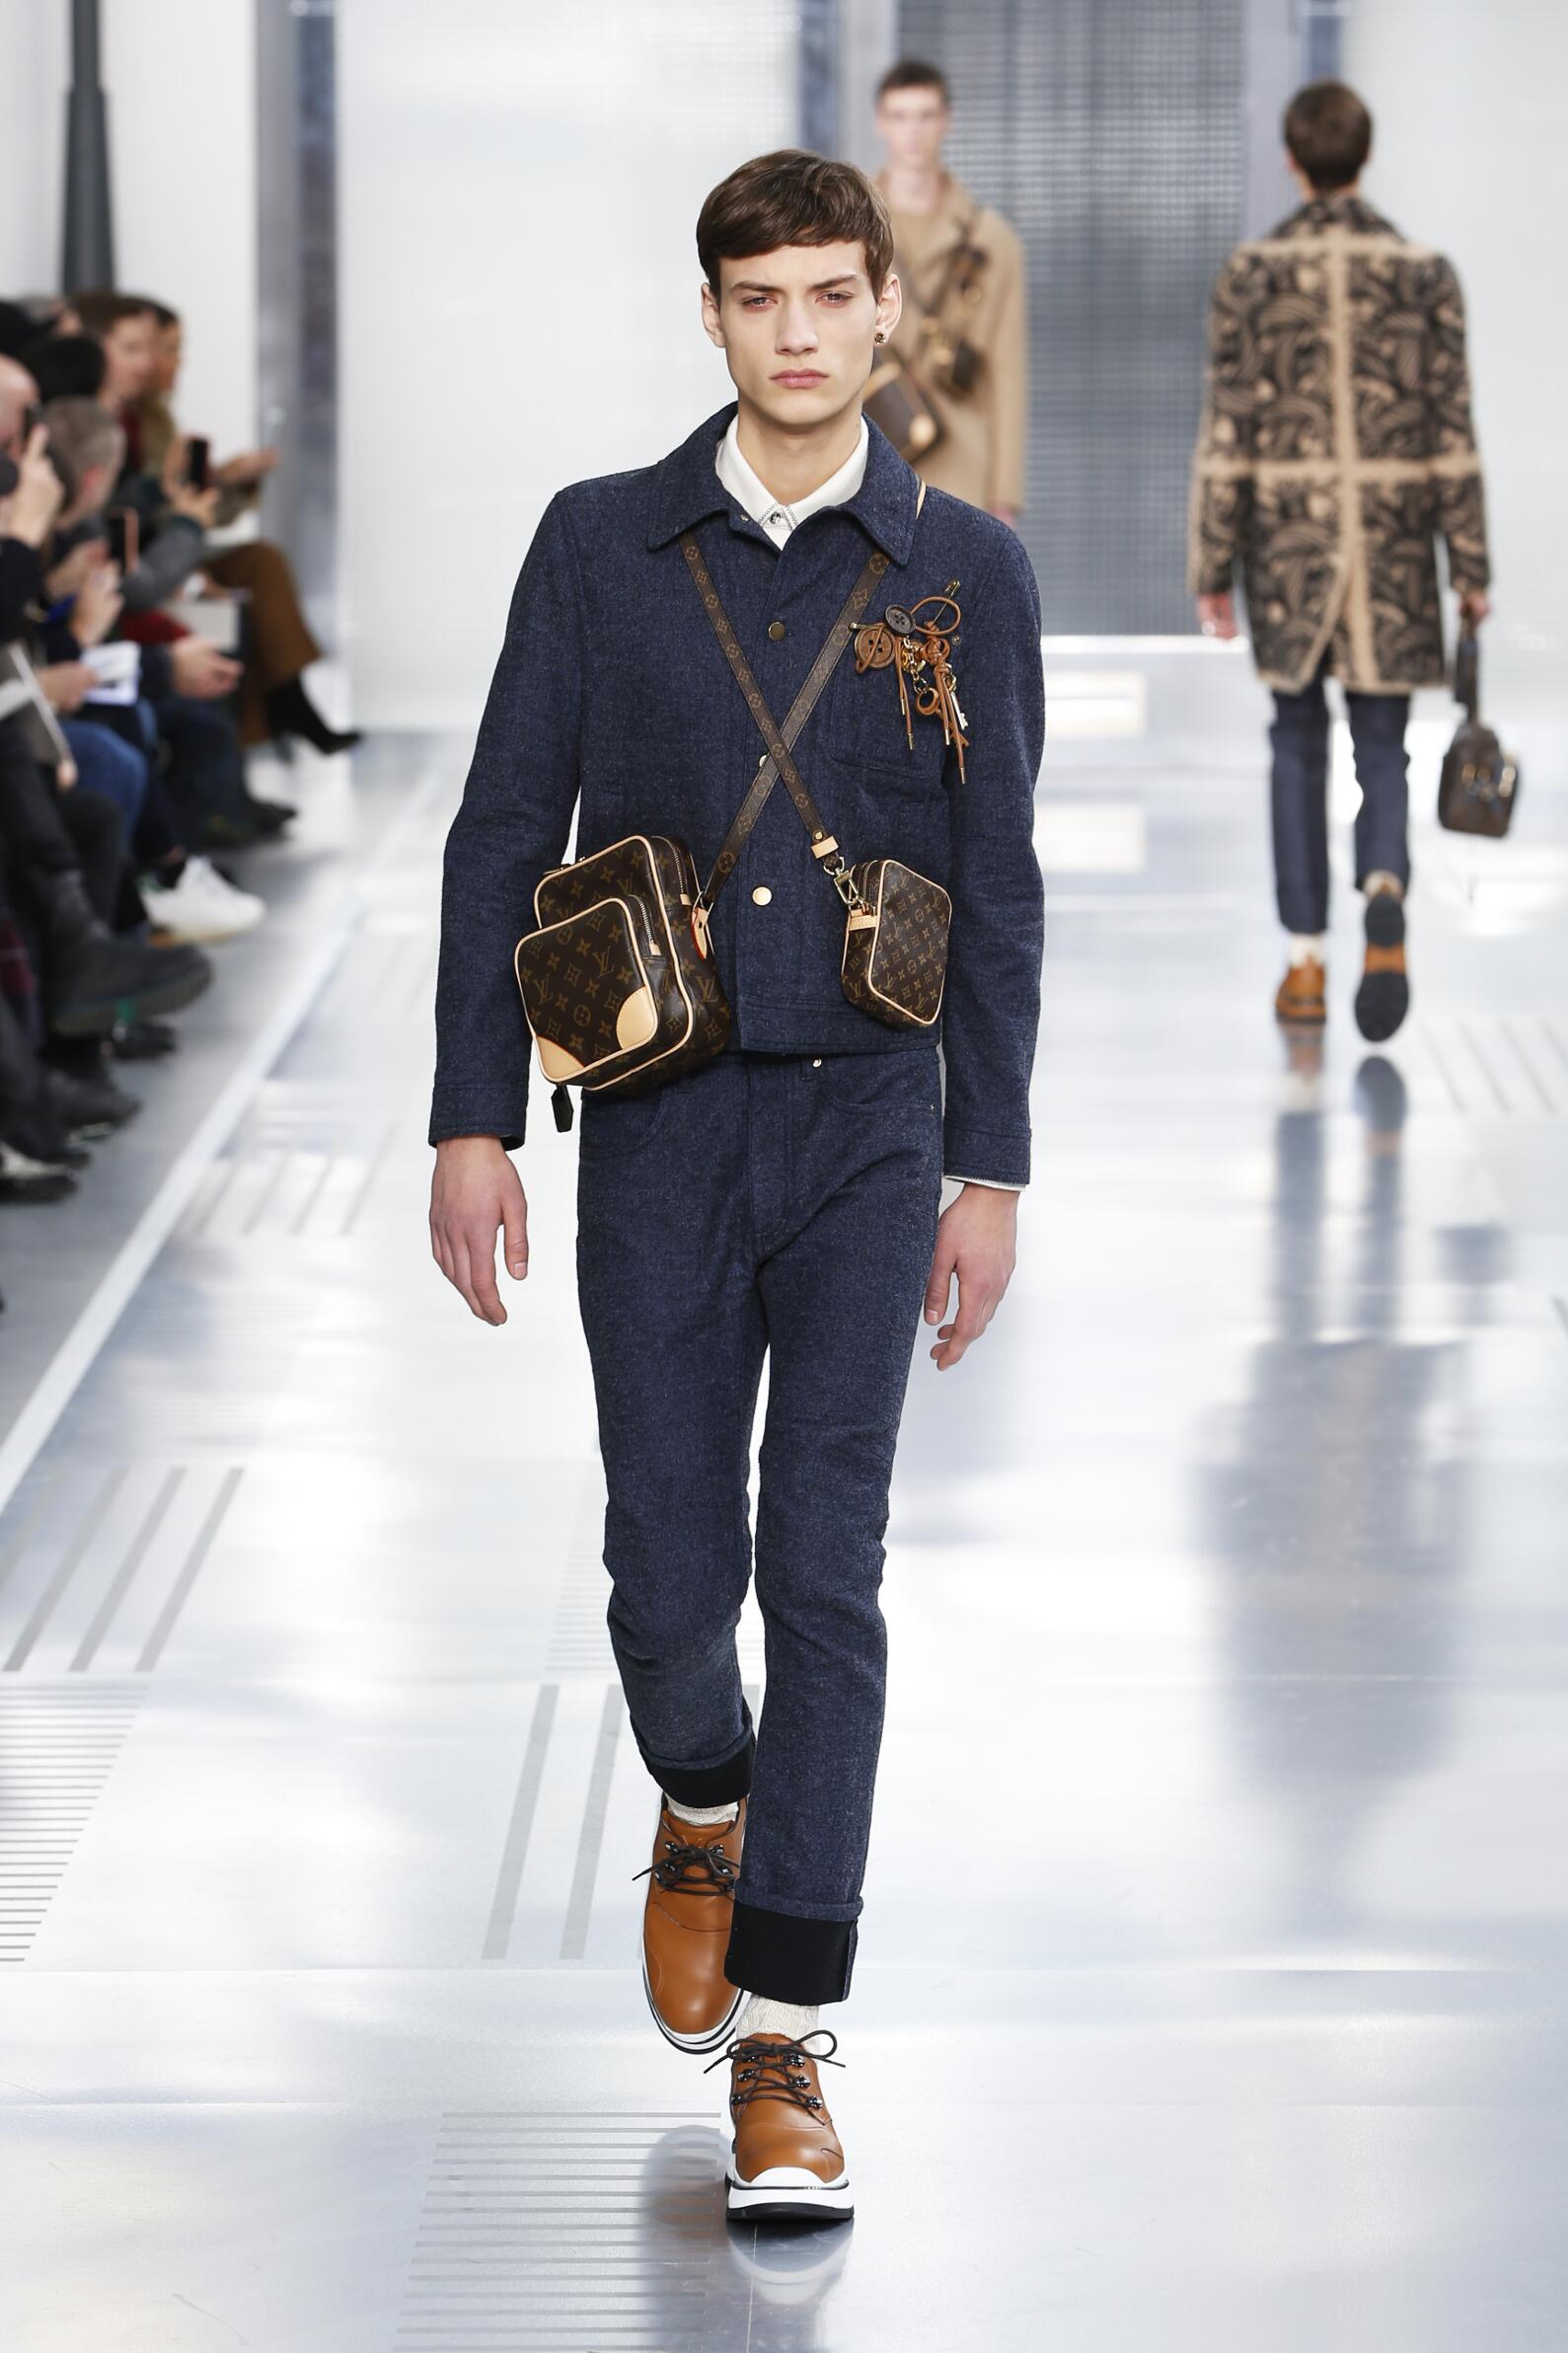 Louis Vuitton 2017 pre-owned Twist MM Shoulder Bag - Farfetch